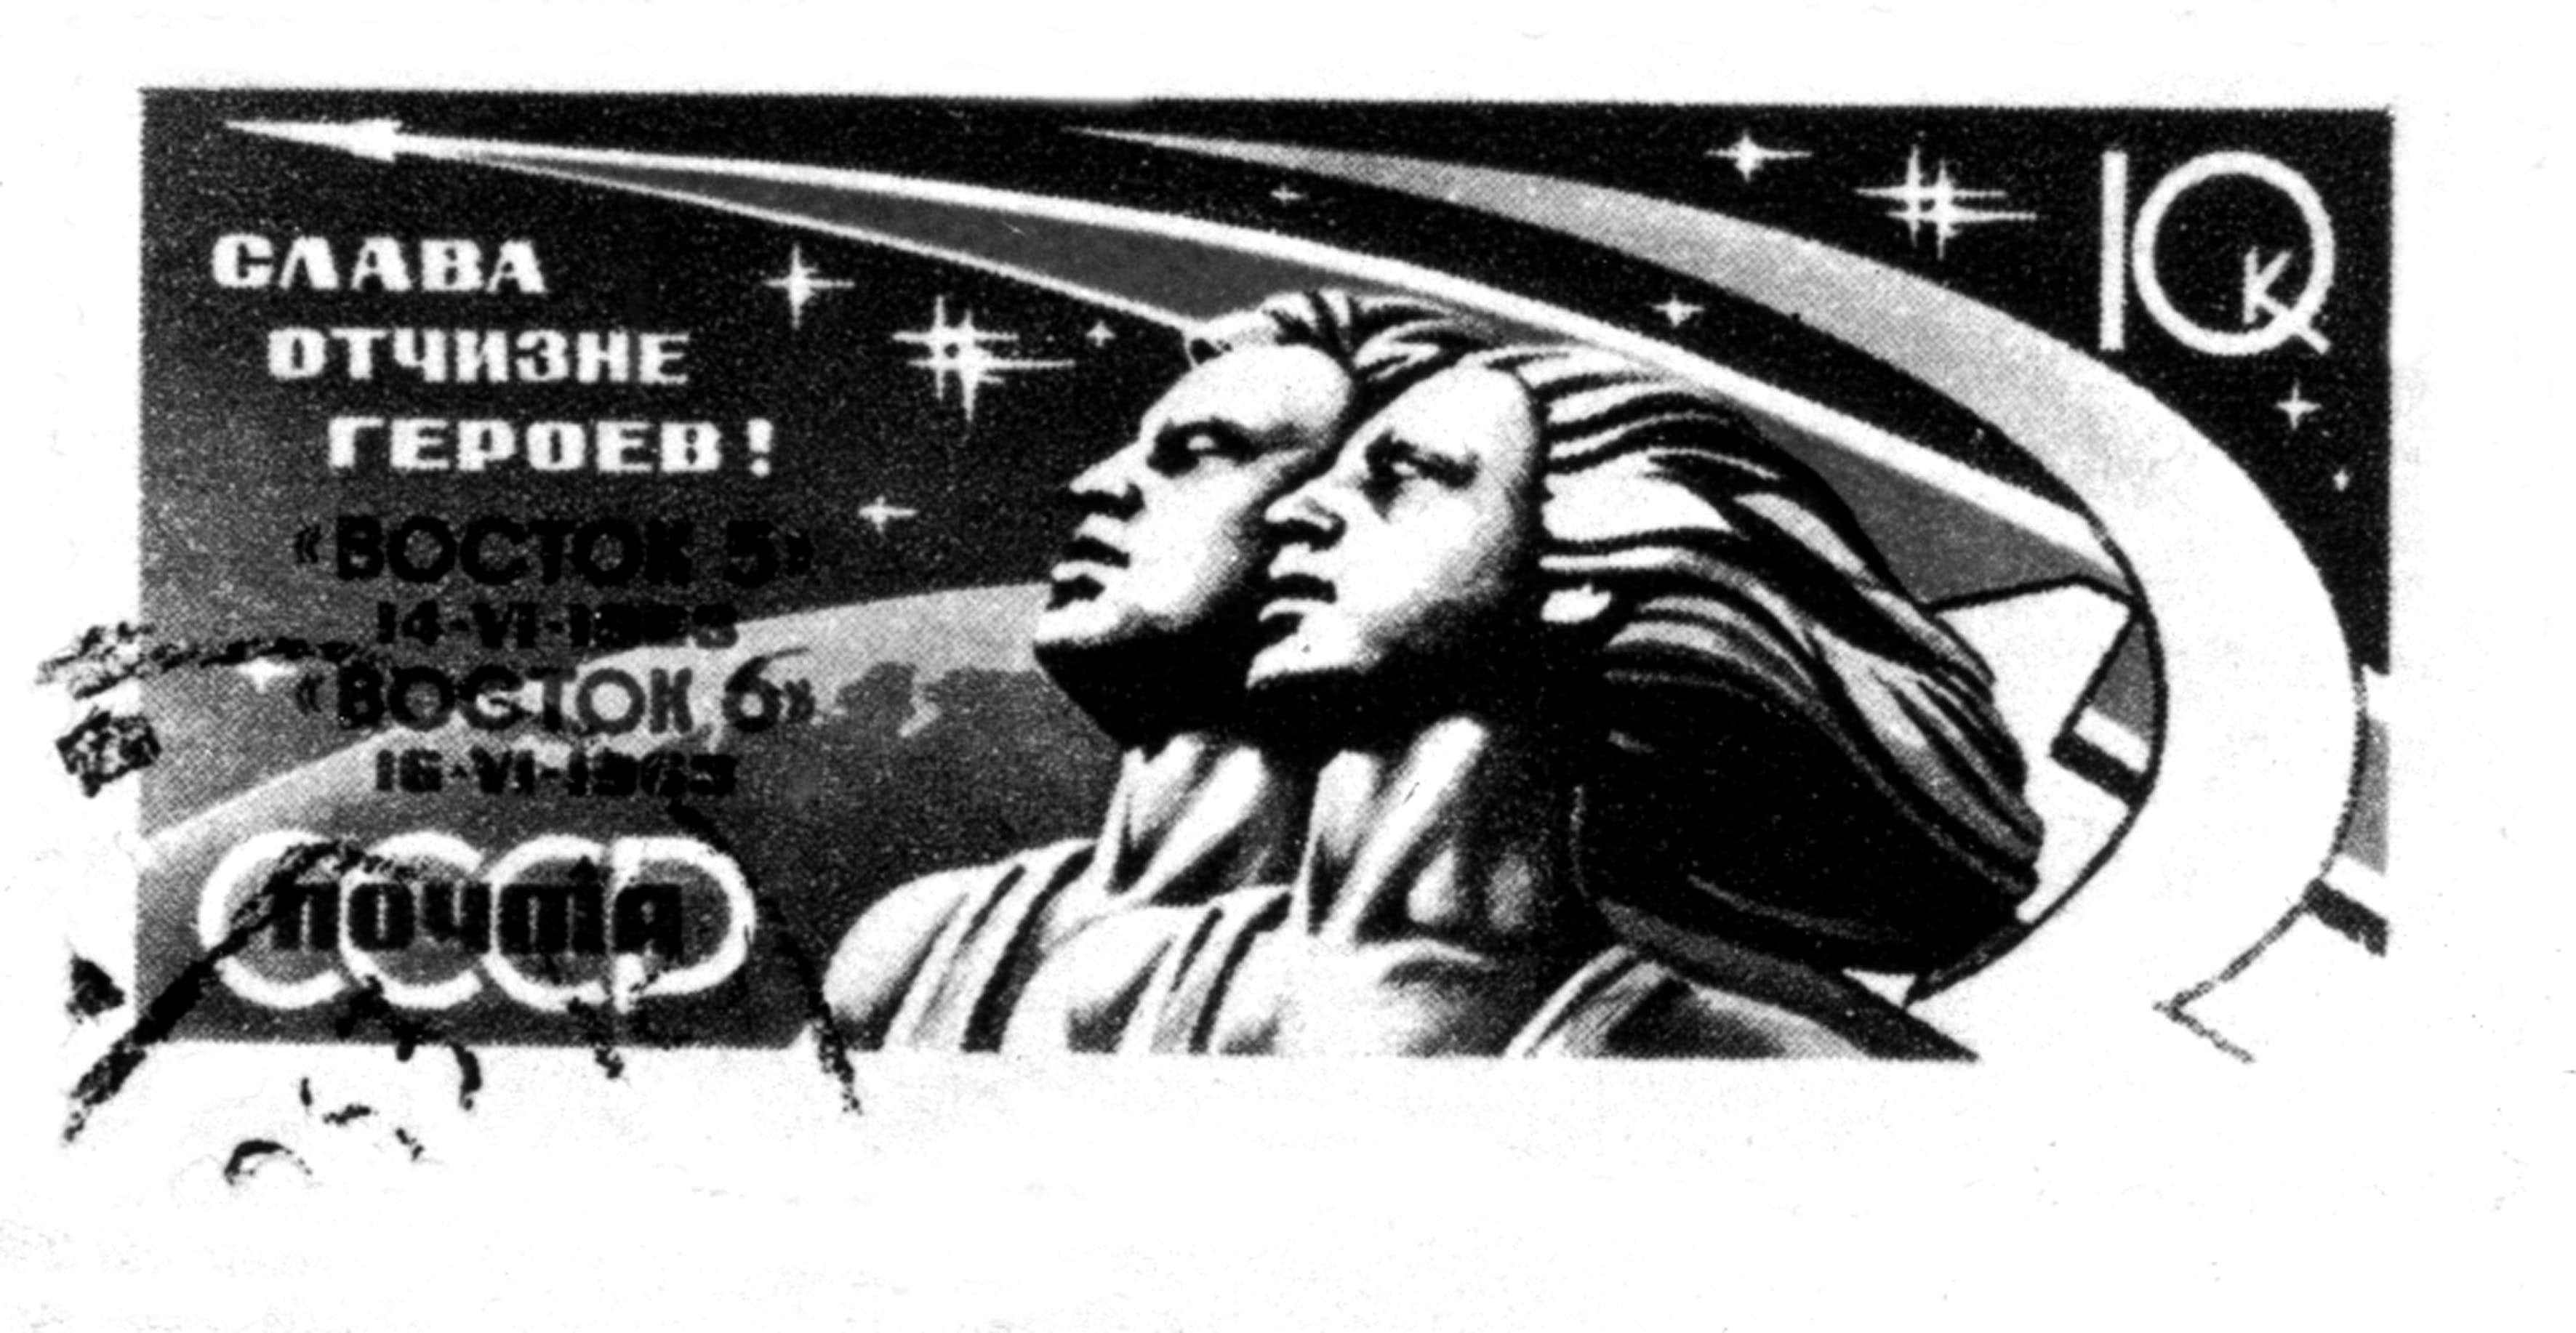 Un francobollo russo celebrativo del viaggio di Gagarin nello spazio